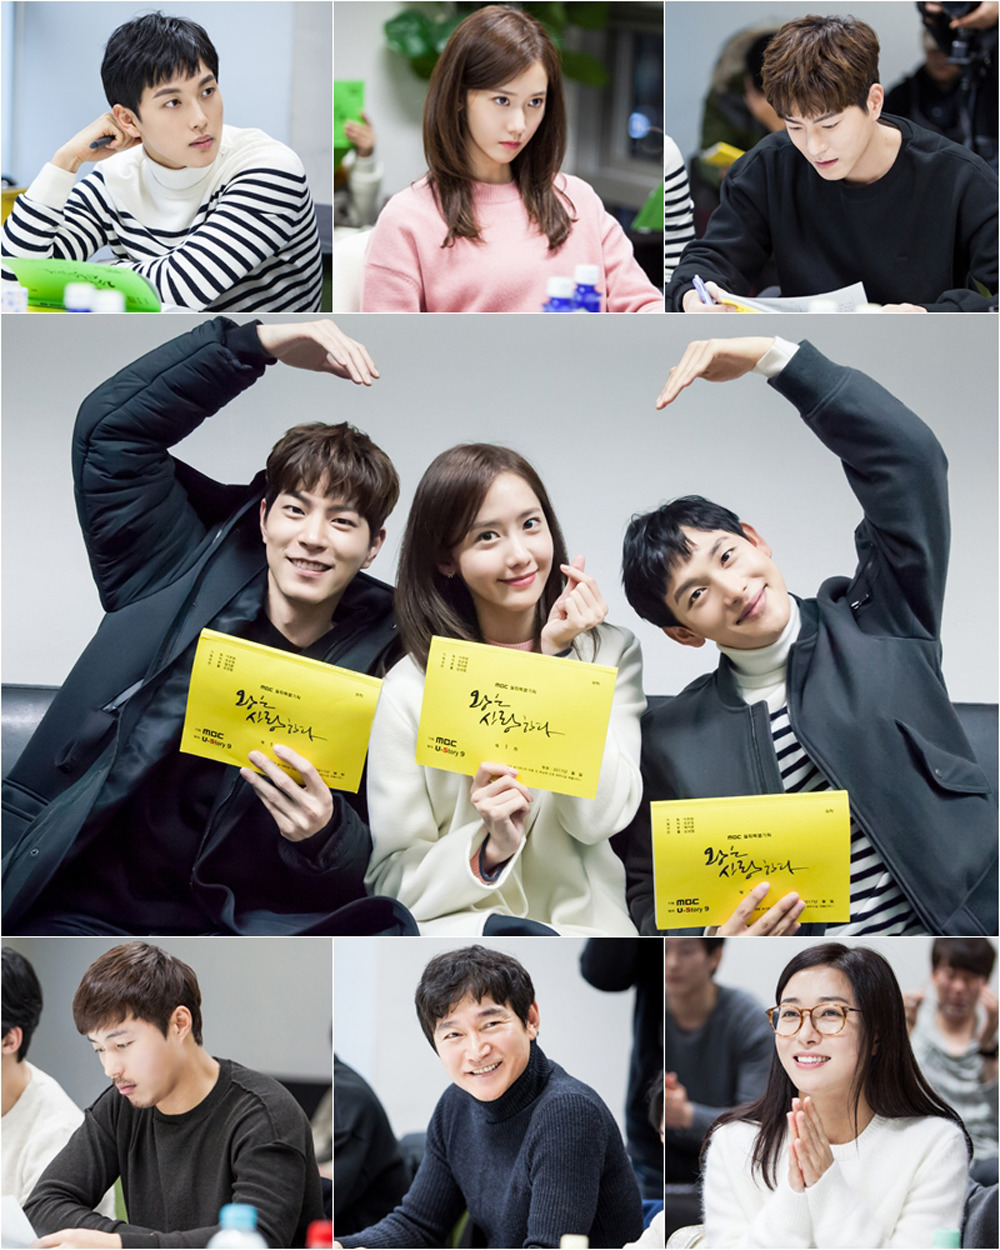 [OTHER][21-11-2016]YoonA sẽ đảm nhận vai chính cho dự án cổ trang của kênh MBC - "THE KING LOVES" 25646350586F0D6C015D54